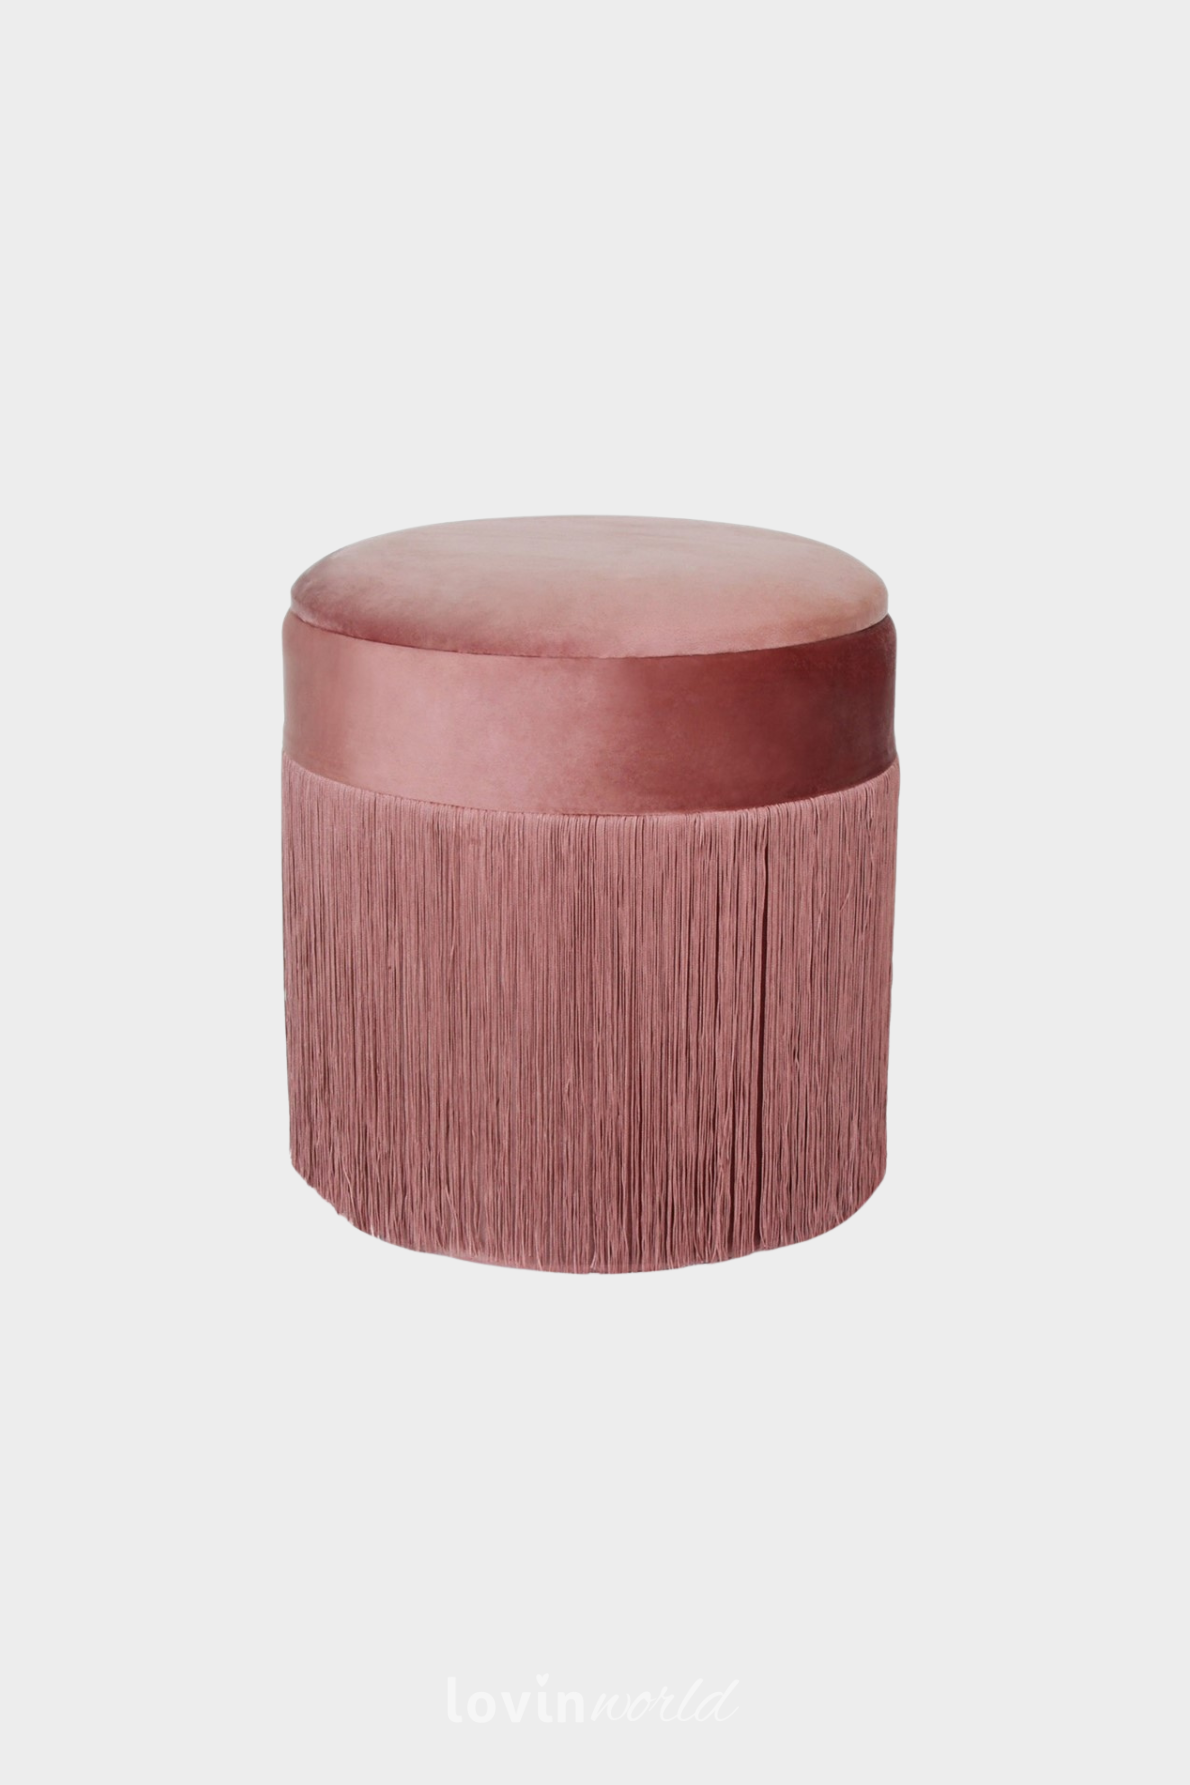 Pouf contenitore Ushi, in colore rosa 40x42 cm.